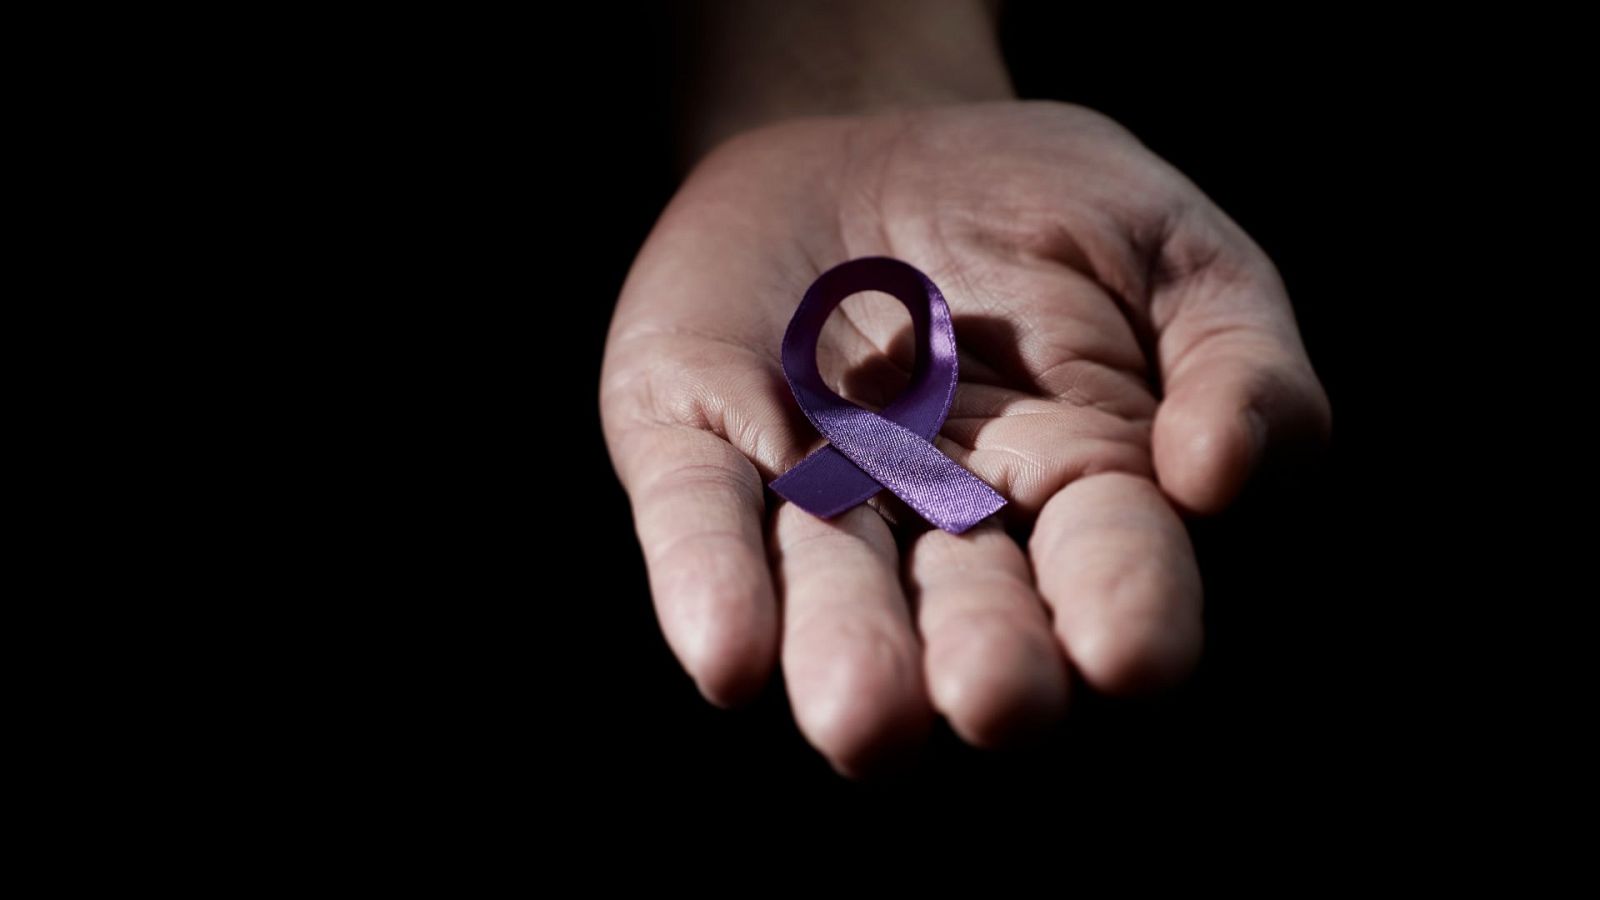 Cuatro víctimas de la violencia de género en una semana